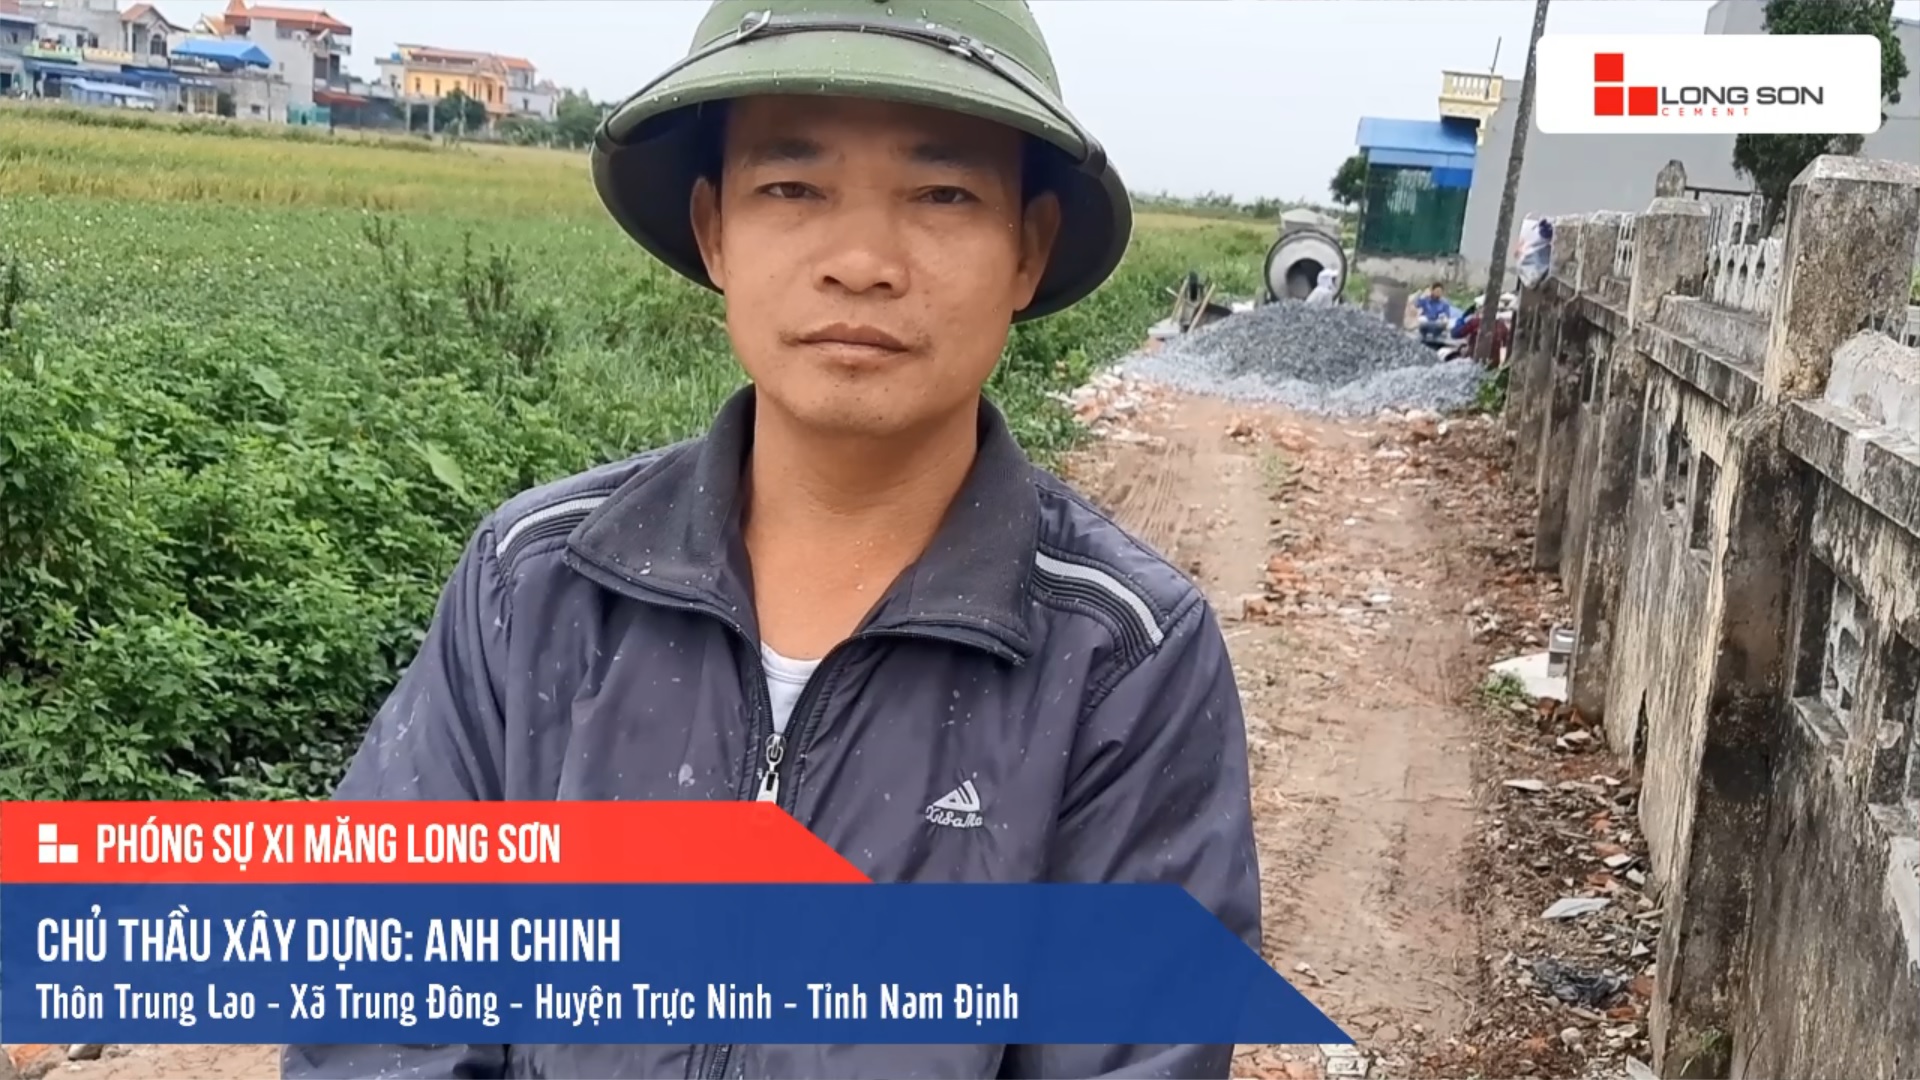 Phóng sự công trình sử dụng Xi măng Long Sơn tại Nam Định 19.11.2019